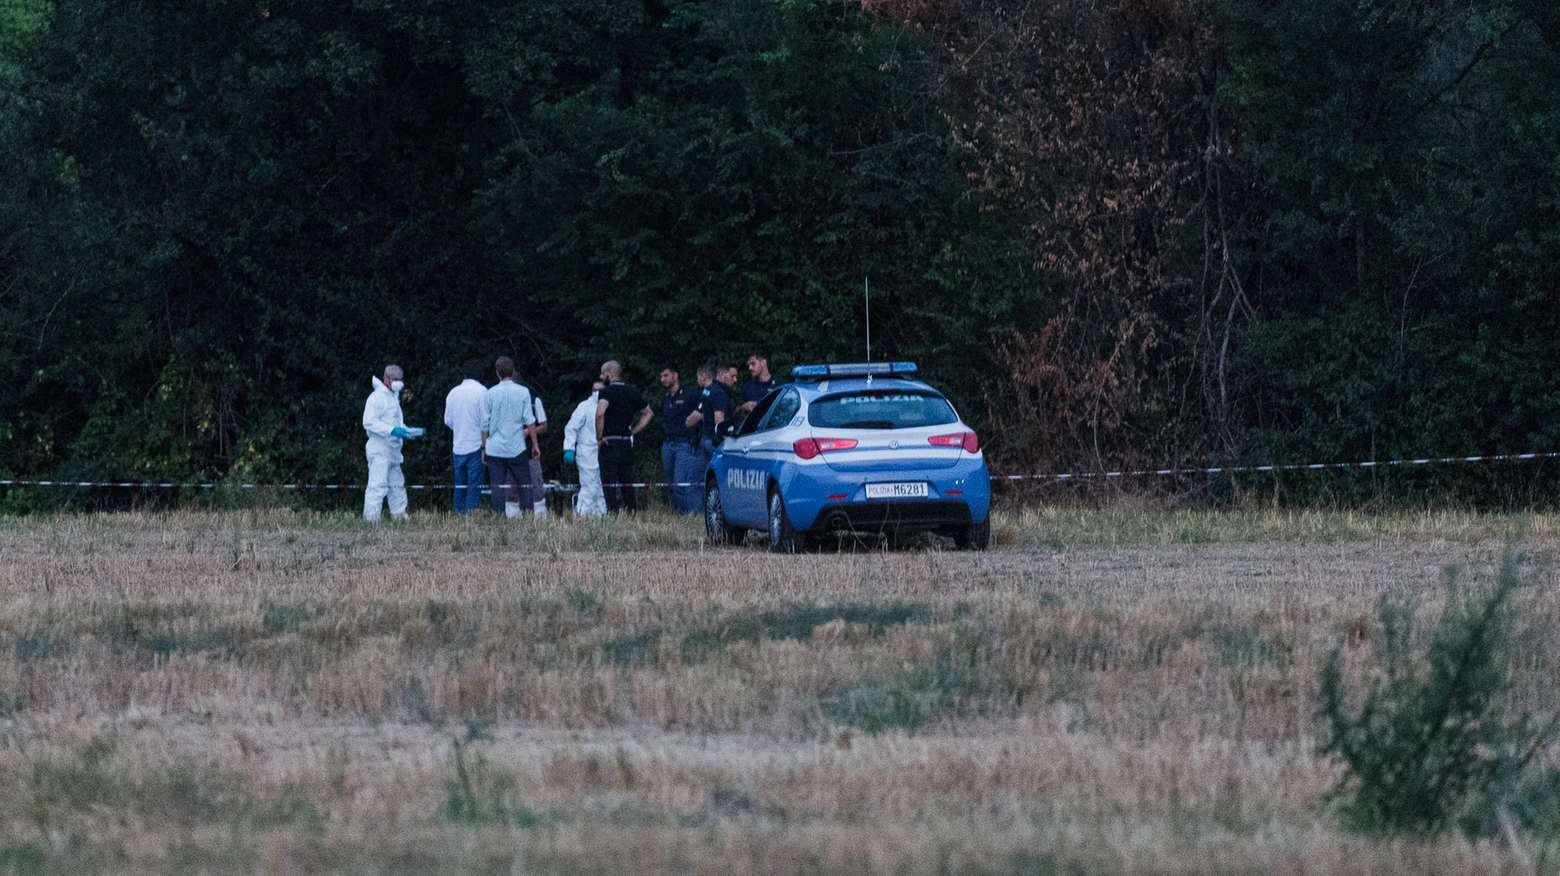 Le indagini in via Pallavicini, dove è stato trovato il cadavere di un 22enne